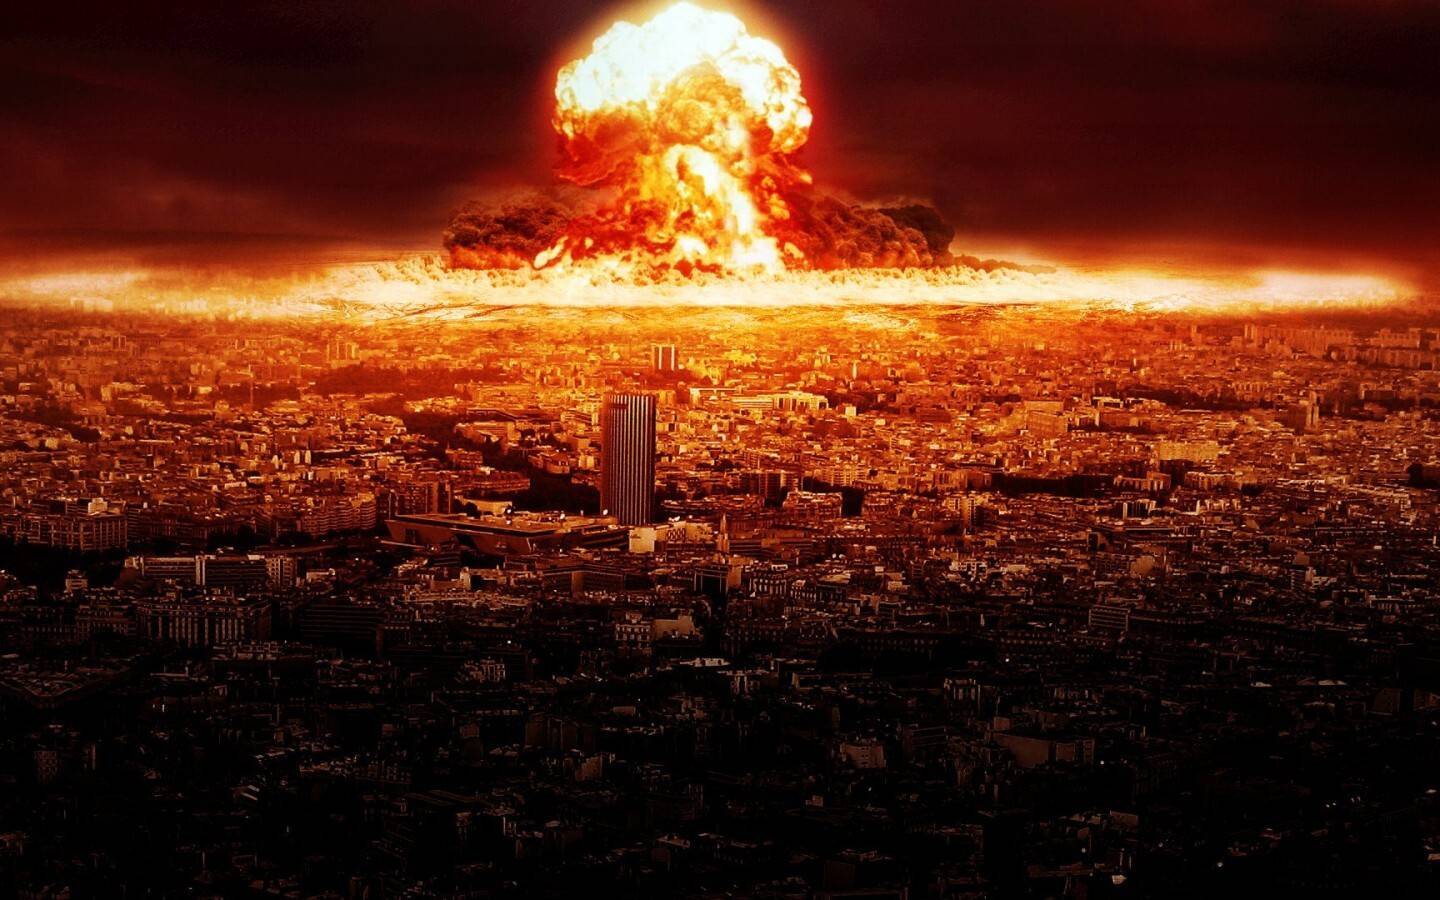 首先导弹爆炸确实会产生蘑菇云,尤其是原子弹,原子弹爆炸时温度特别高